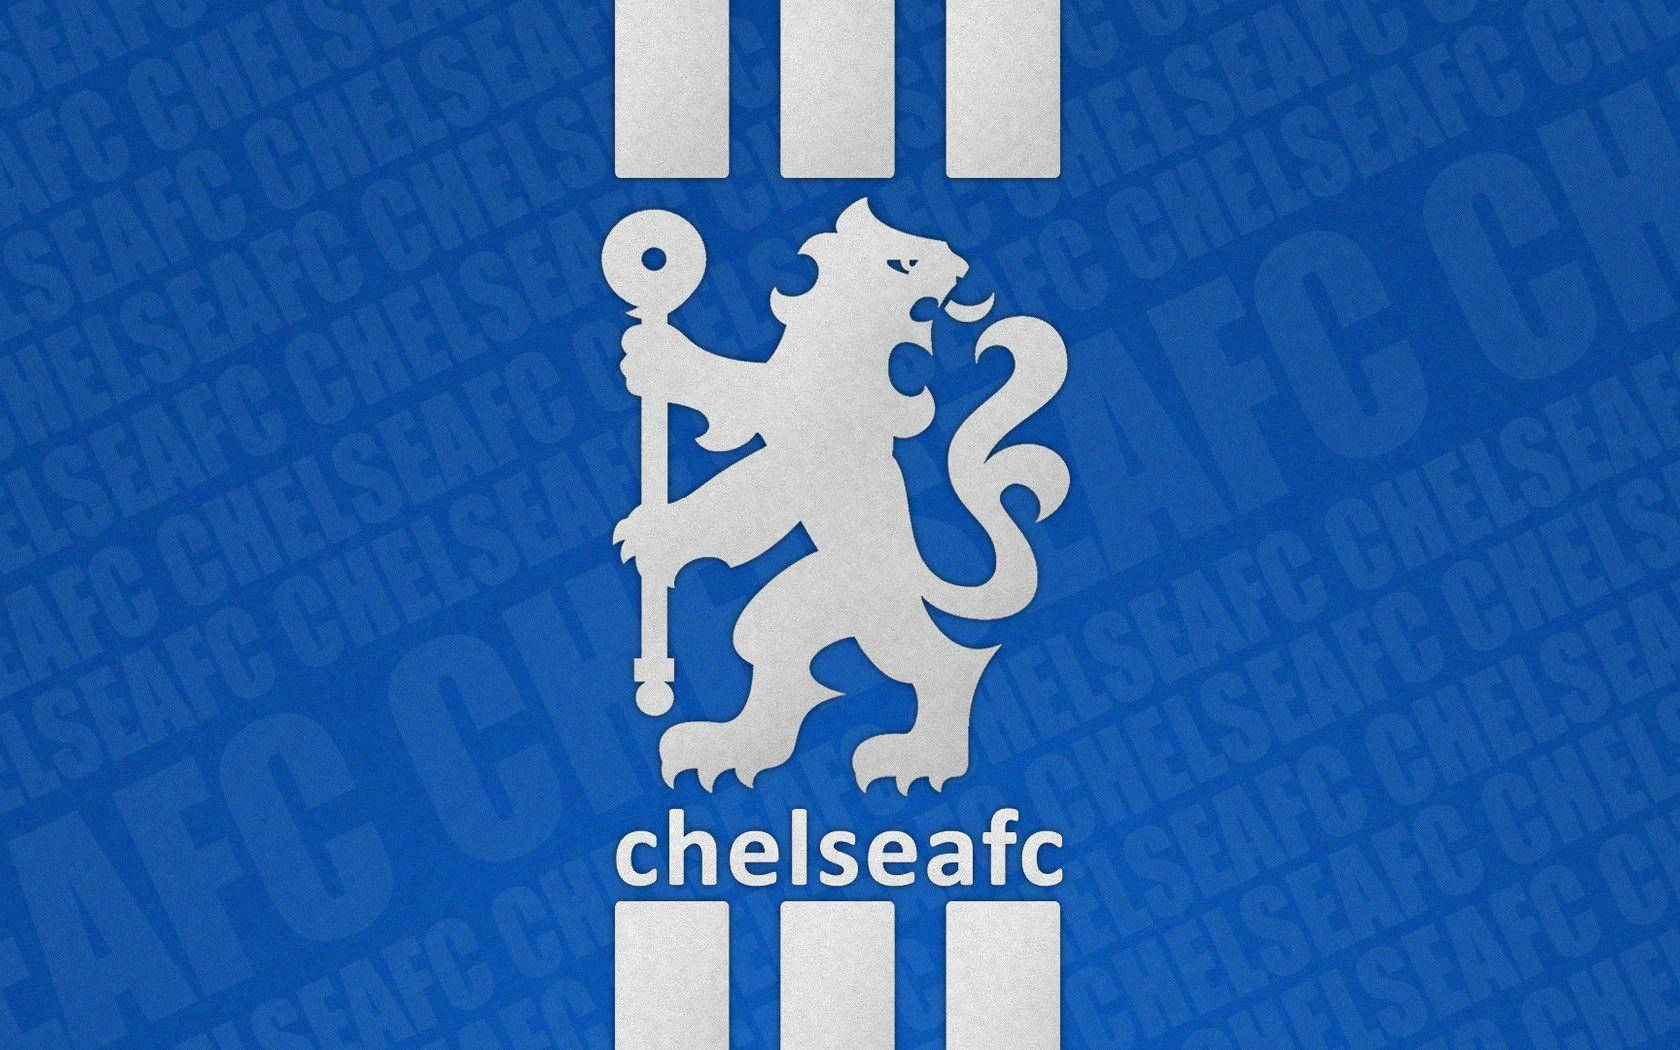 Logodel Chelsea Fc En Azul Y Blanco. Fondo de pantalla